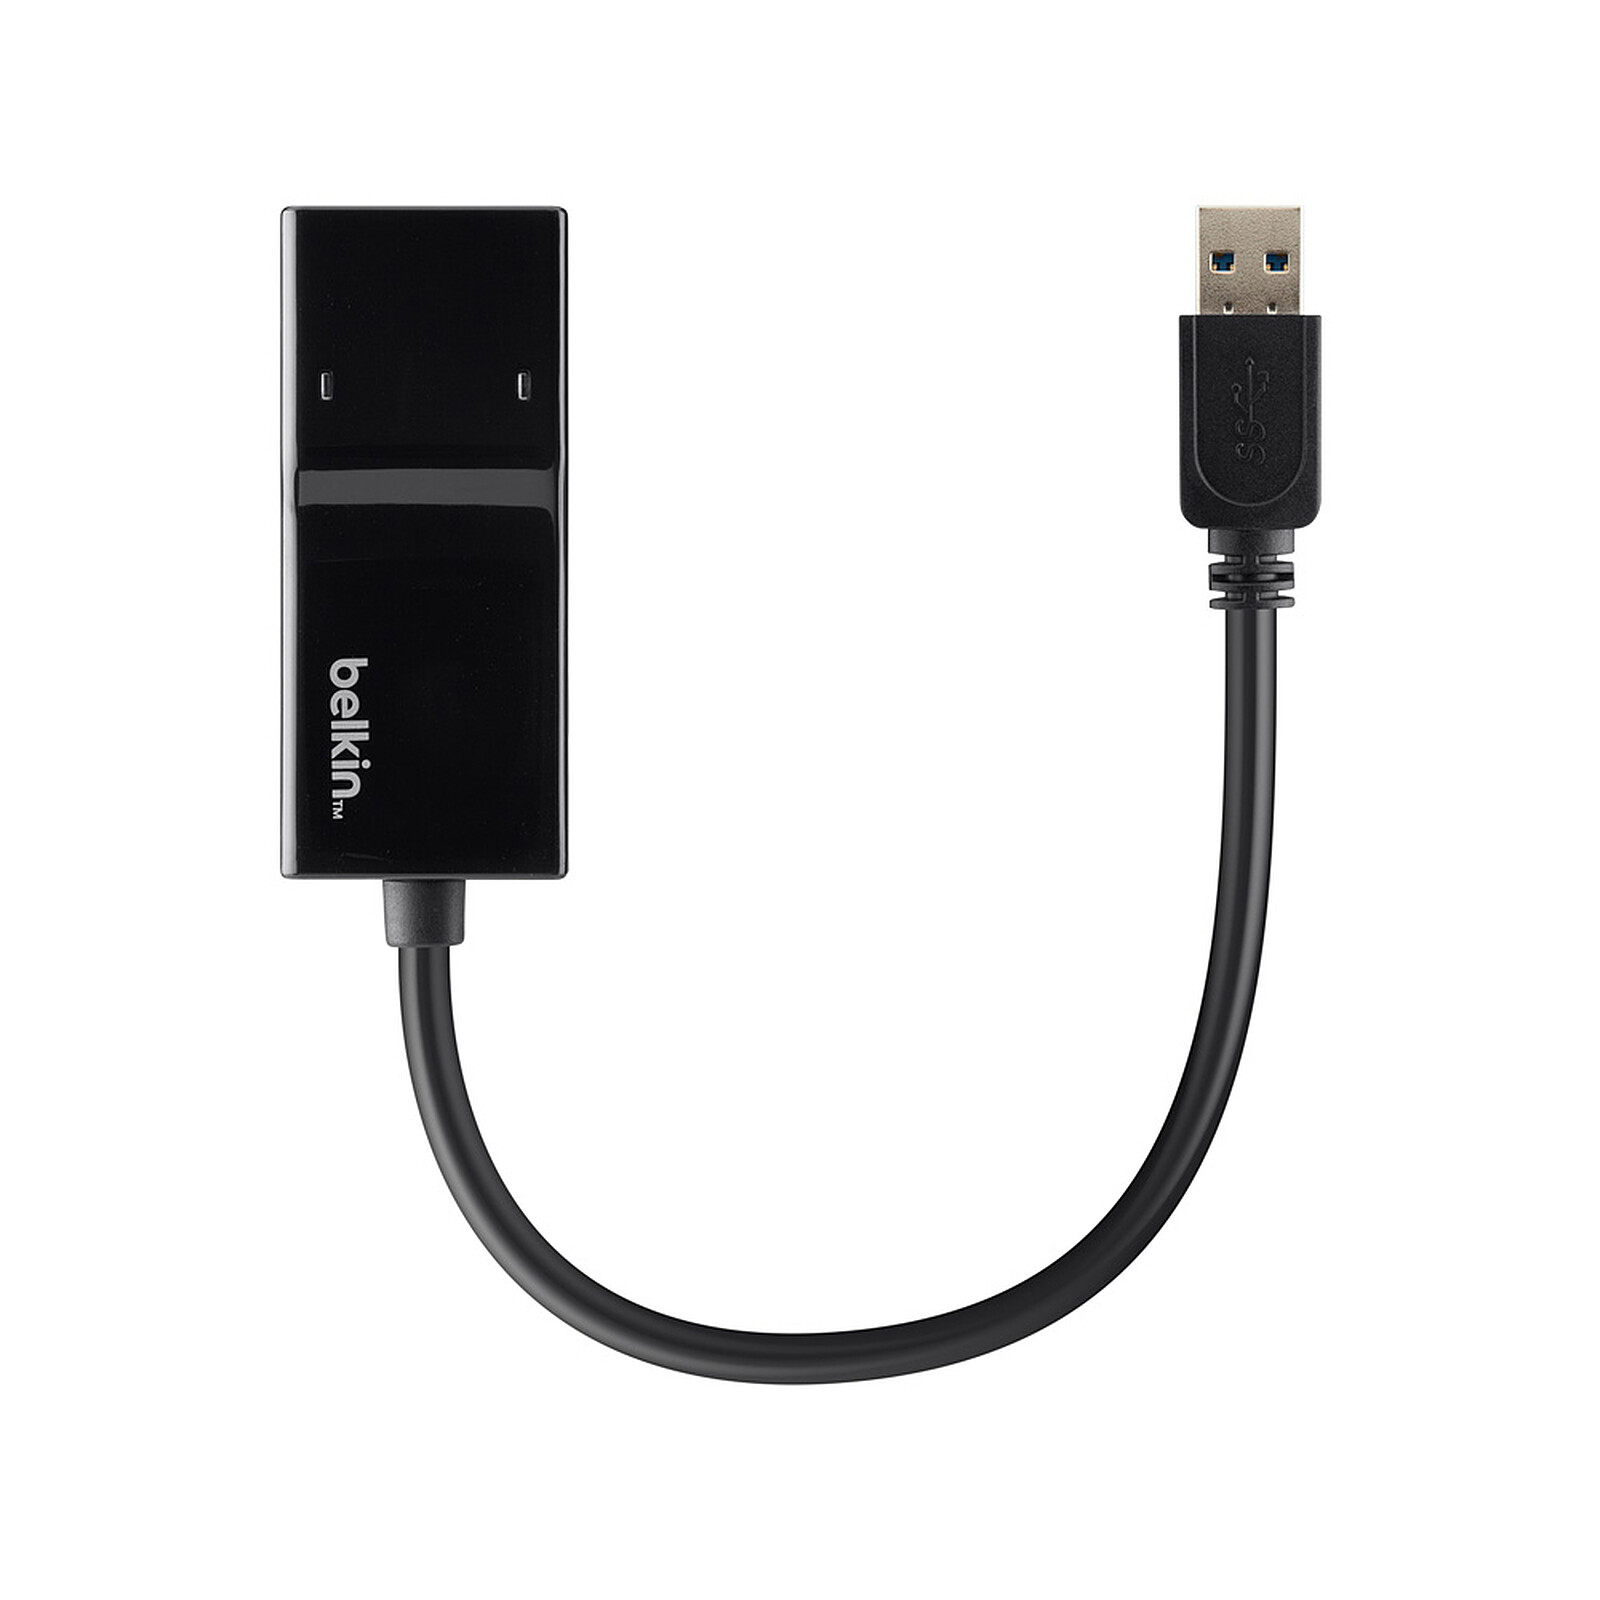 Adattatore Belkin da USB 3.0 a Gigabit Ethernet